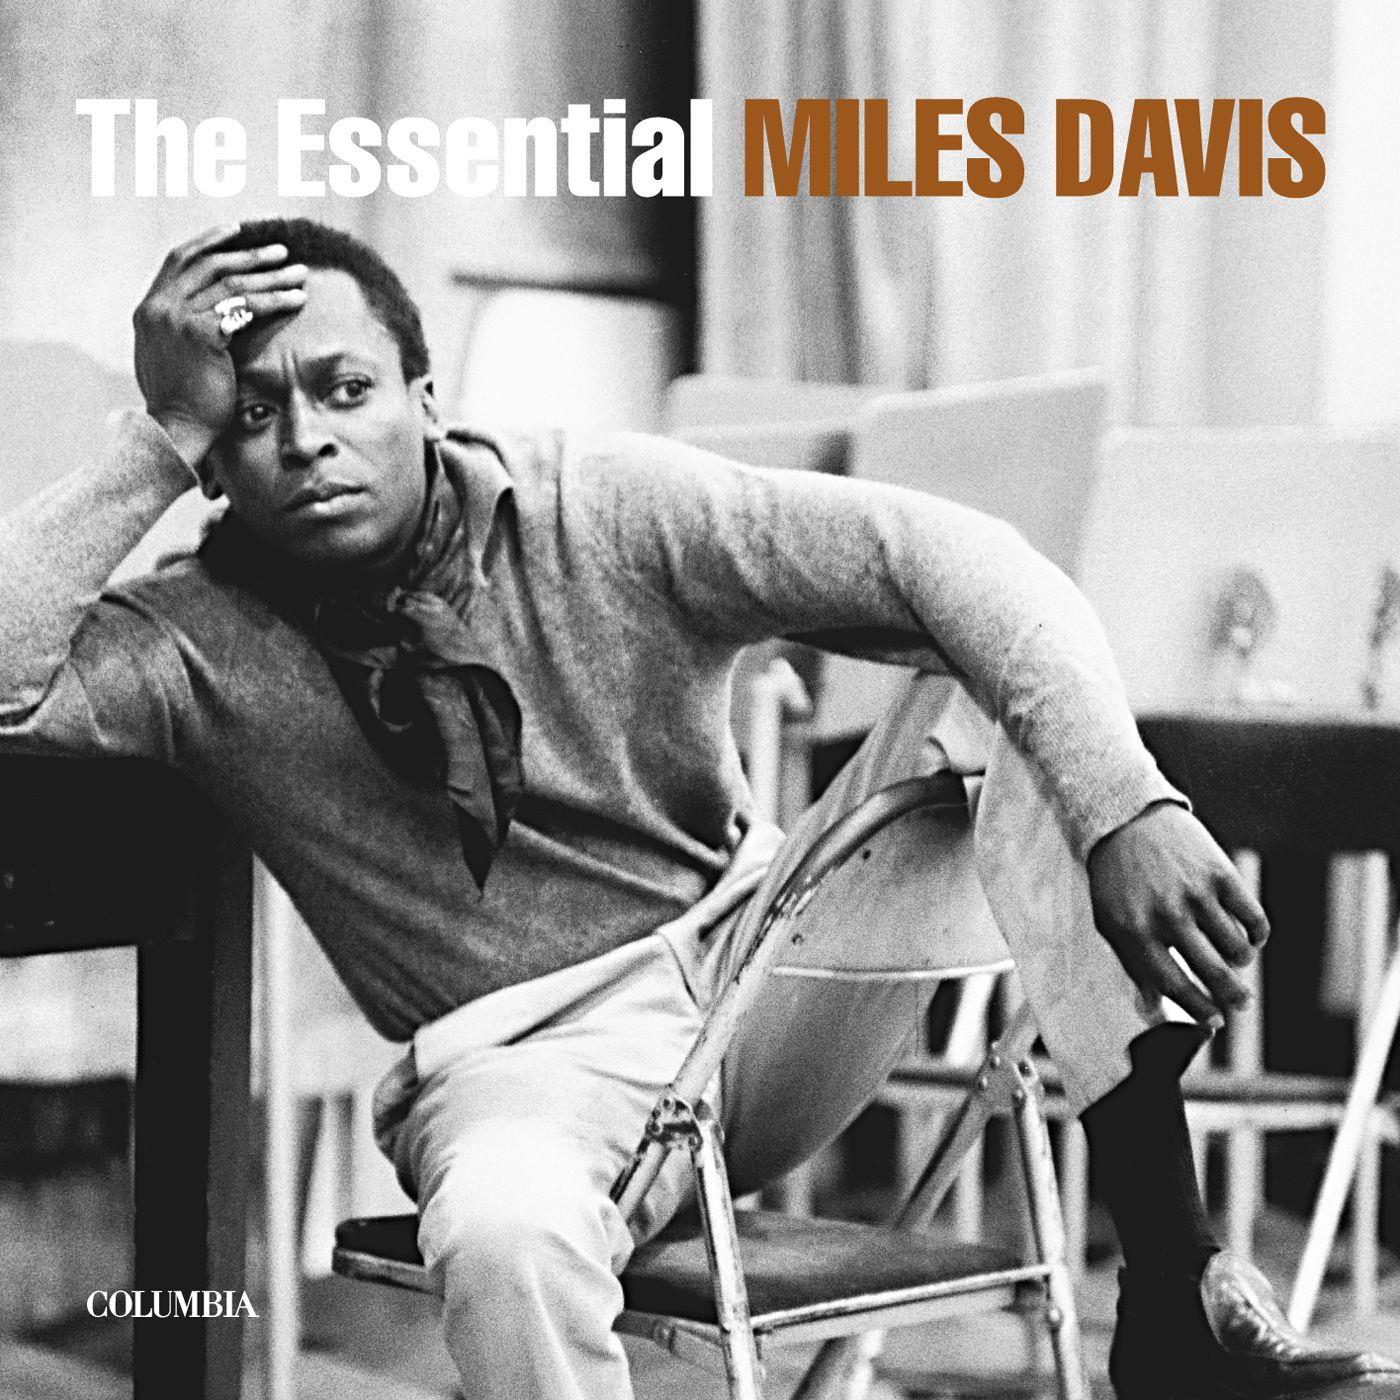 essential miles davis, the (reissue)